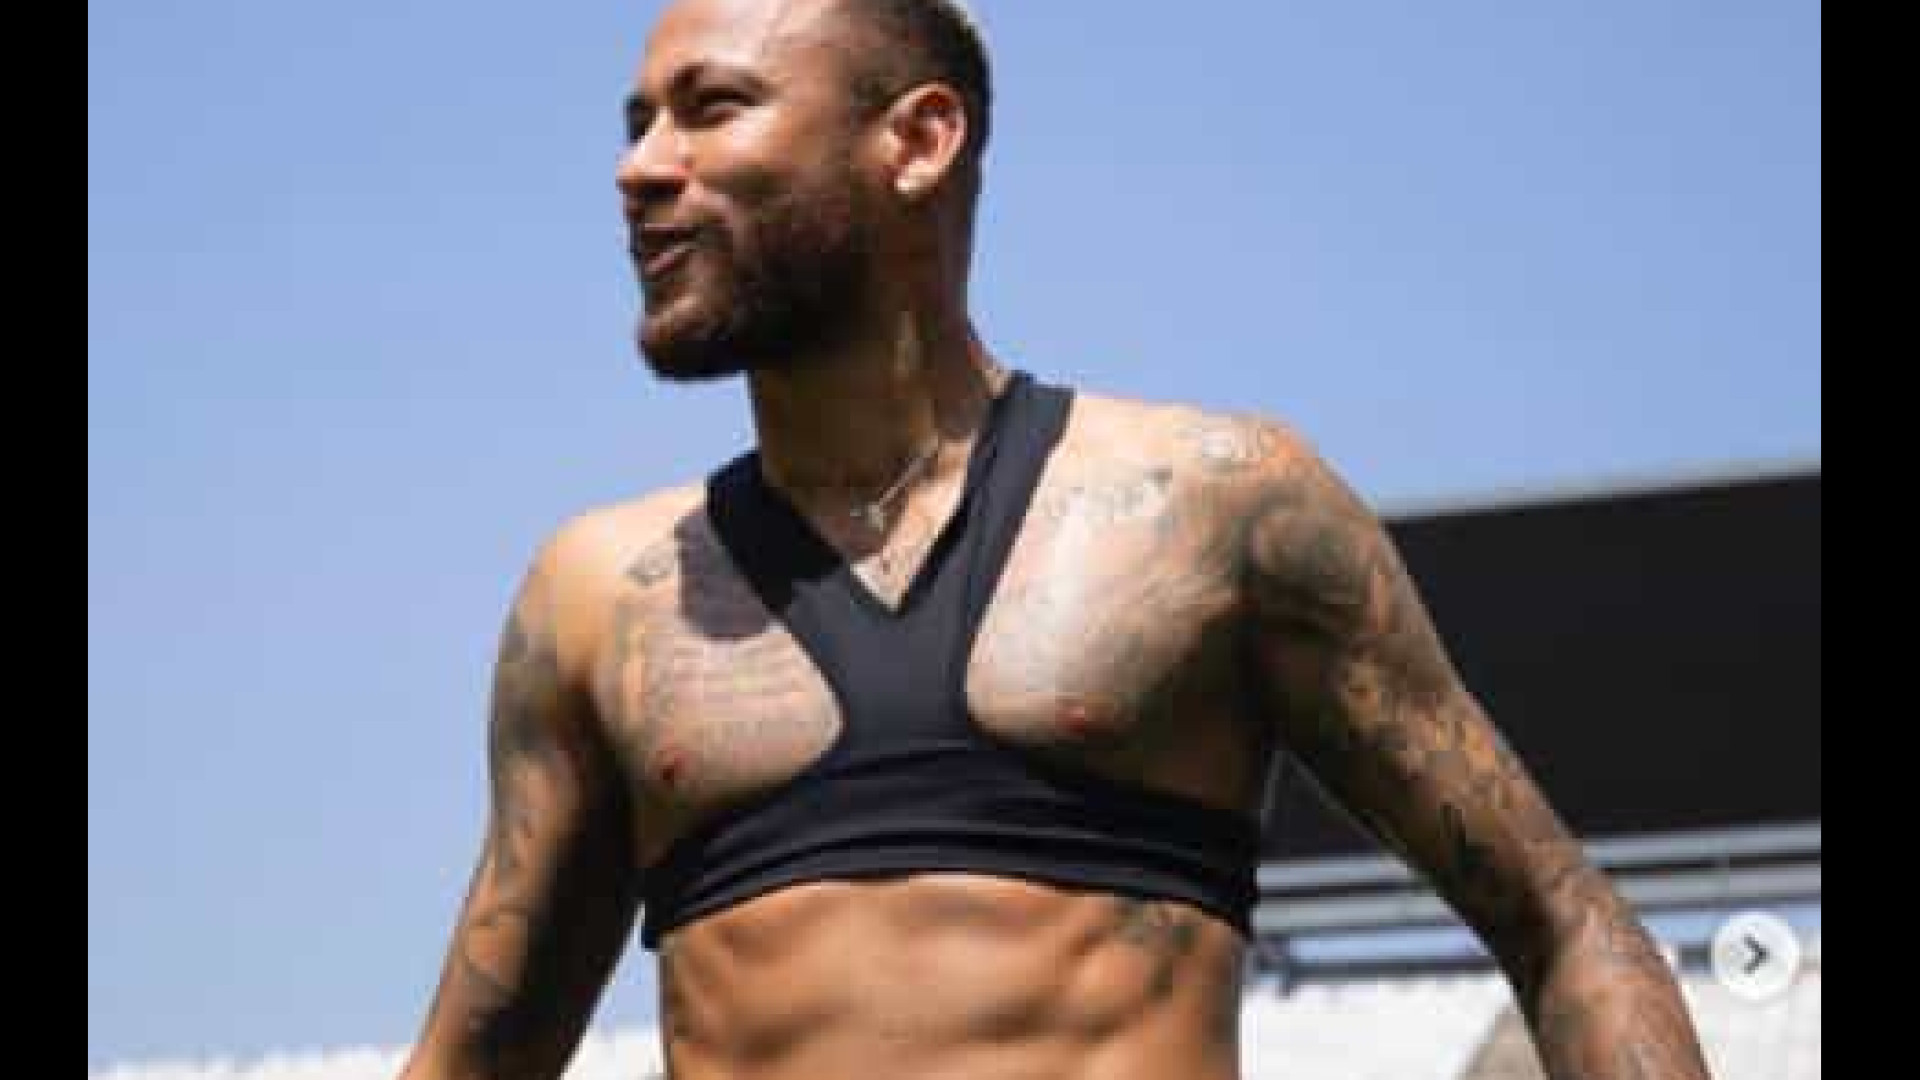 Neymar posta foto mostrando 'tanquinho' para rebater críticos sobre seu peso